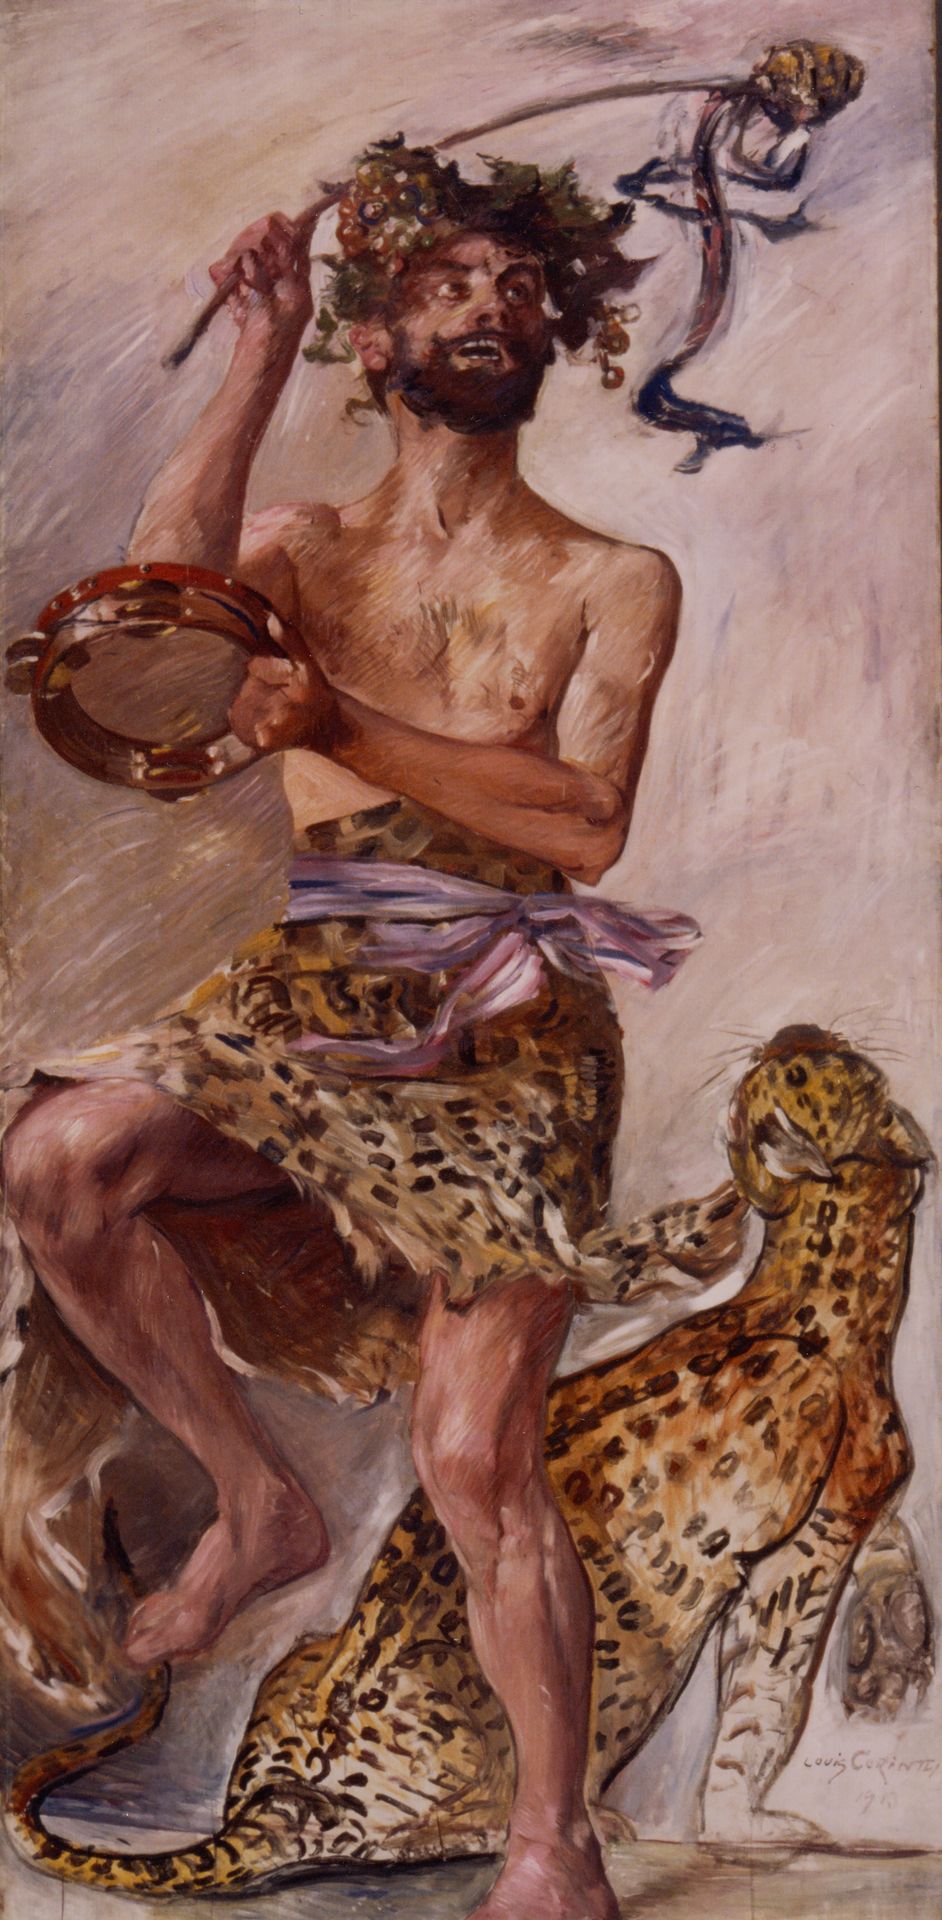 Gemälde von Lovis Corinth, Tempera auf Leinwand, 228,5 × 110 cm